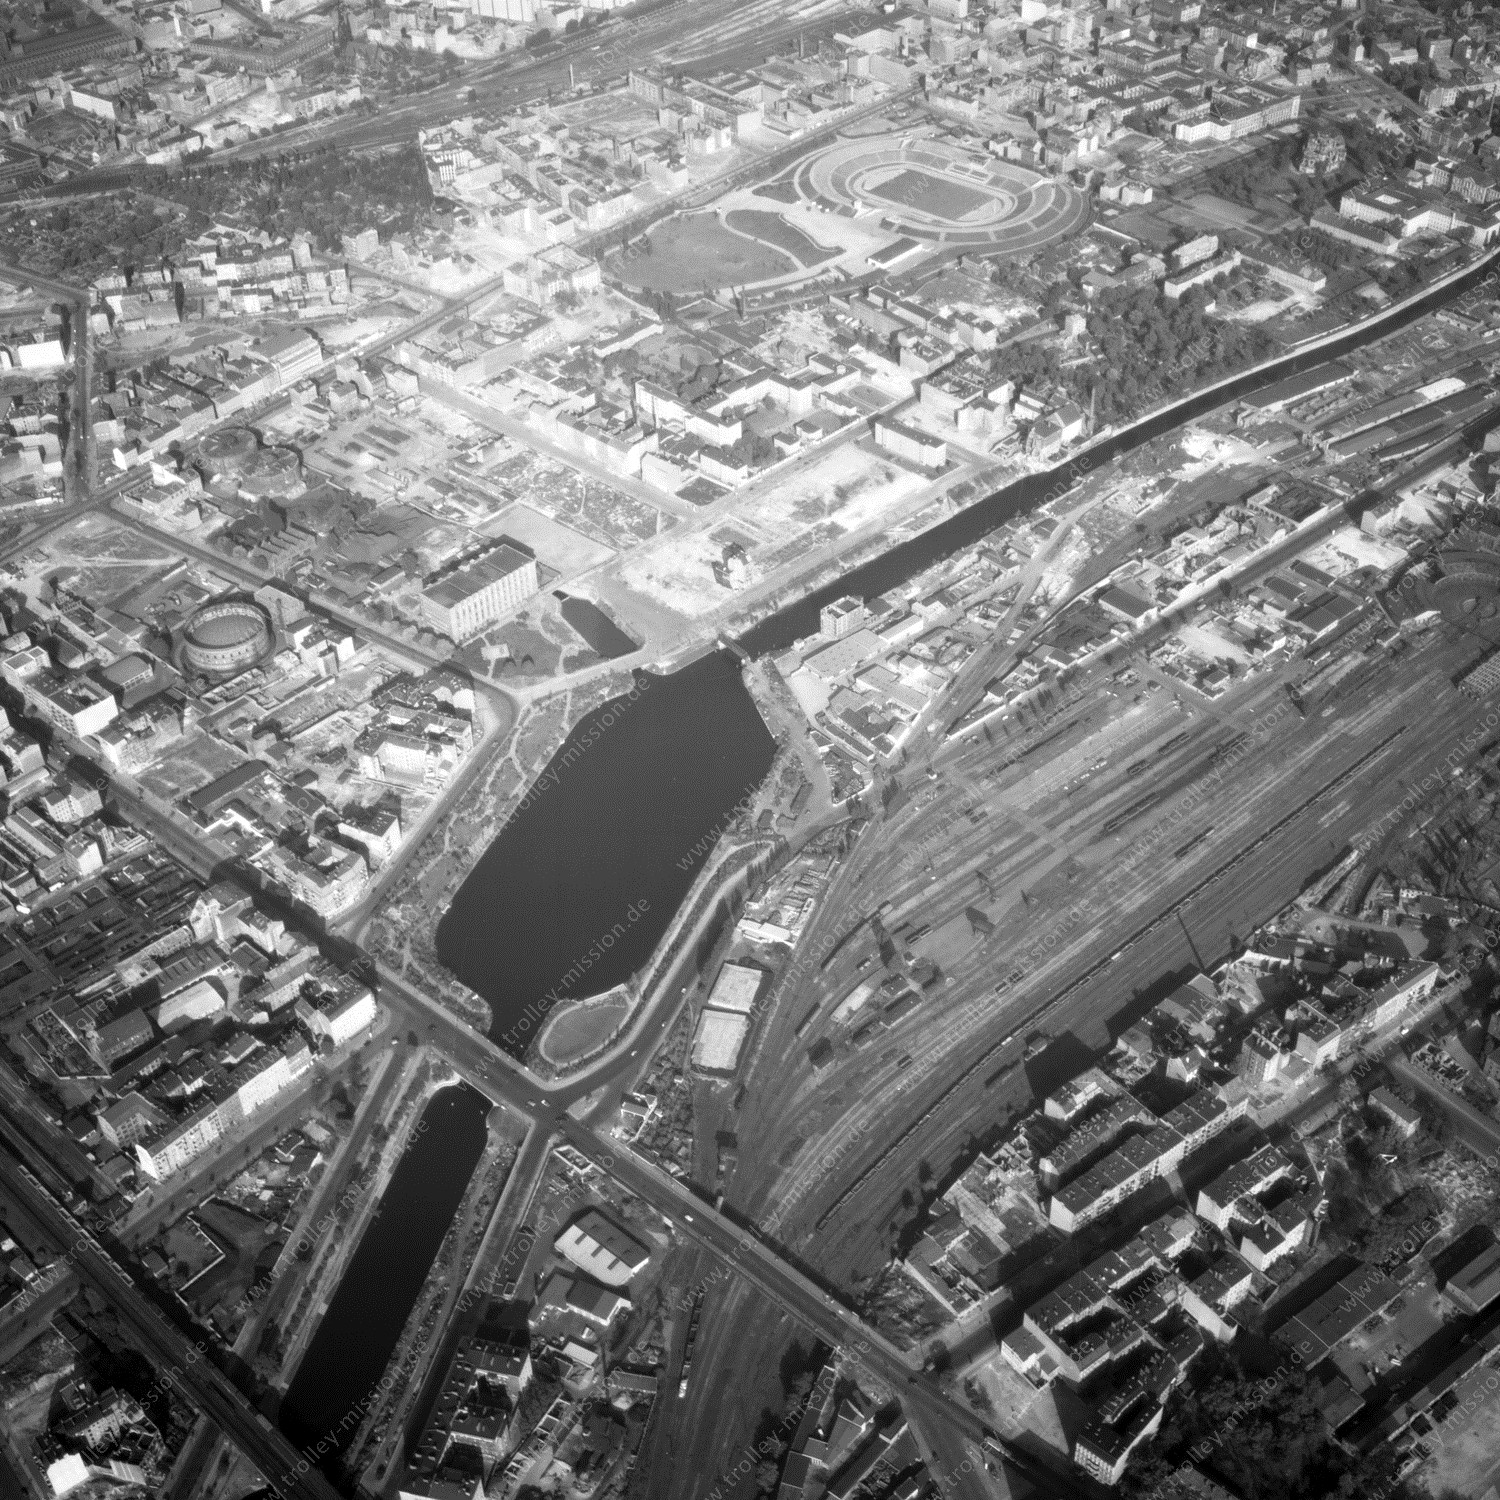 Alte Fotos und Luftbilder von Berlin - Luftbildaufnahme Nr. 04 - Historische Luftaufnahmen von West-Berlin aus dem Jahr 1954 - Flugstrecke Papa